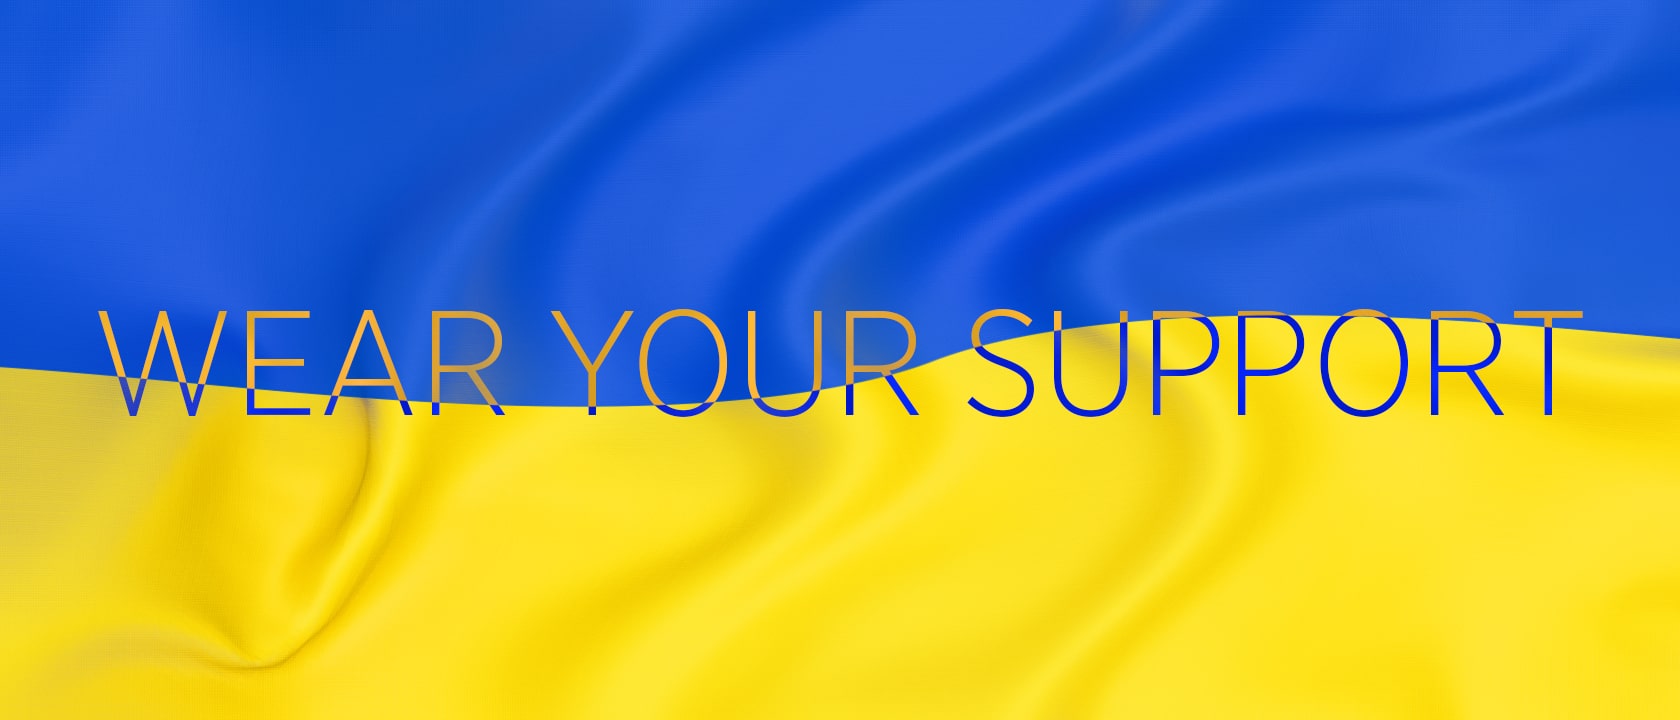 Ukraine: Wear Your Support